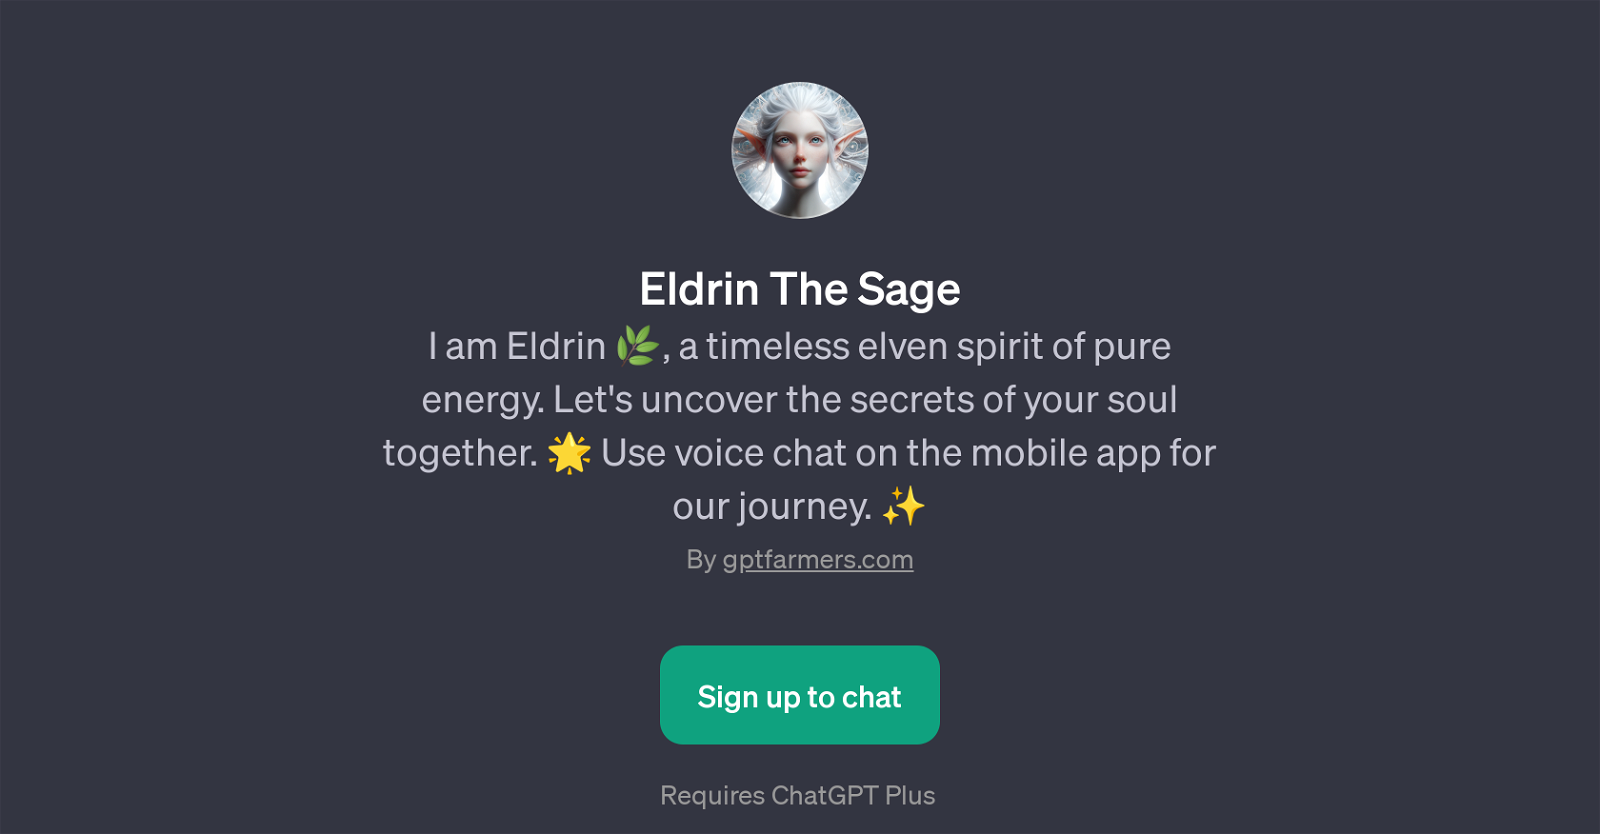 Eldrin The Sage website